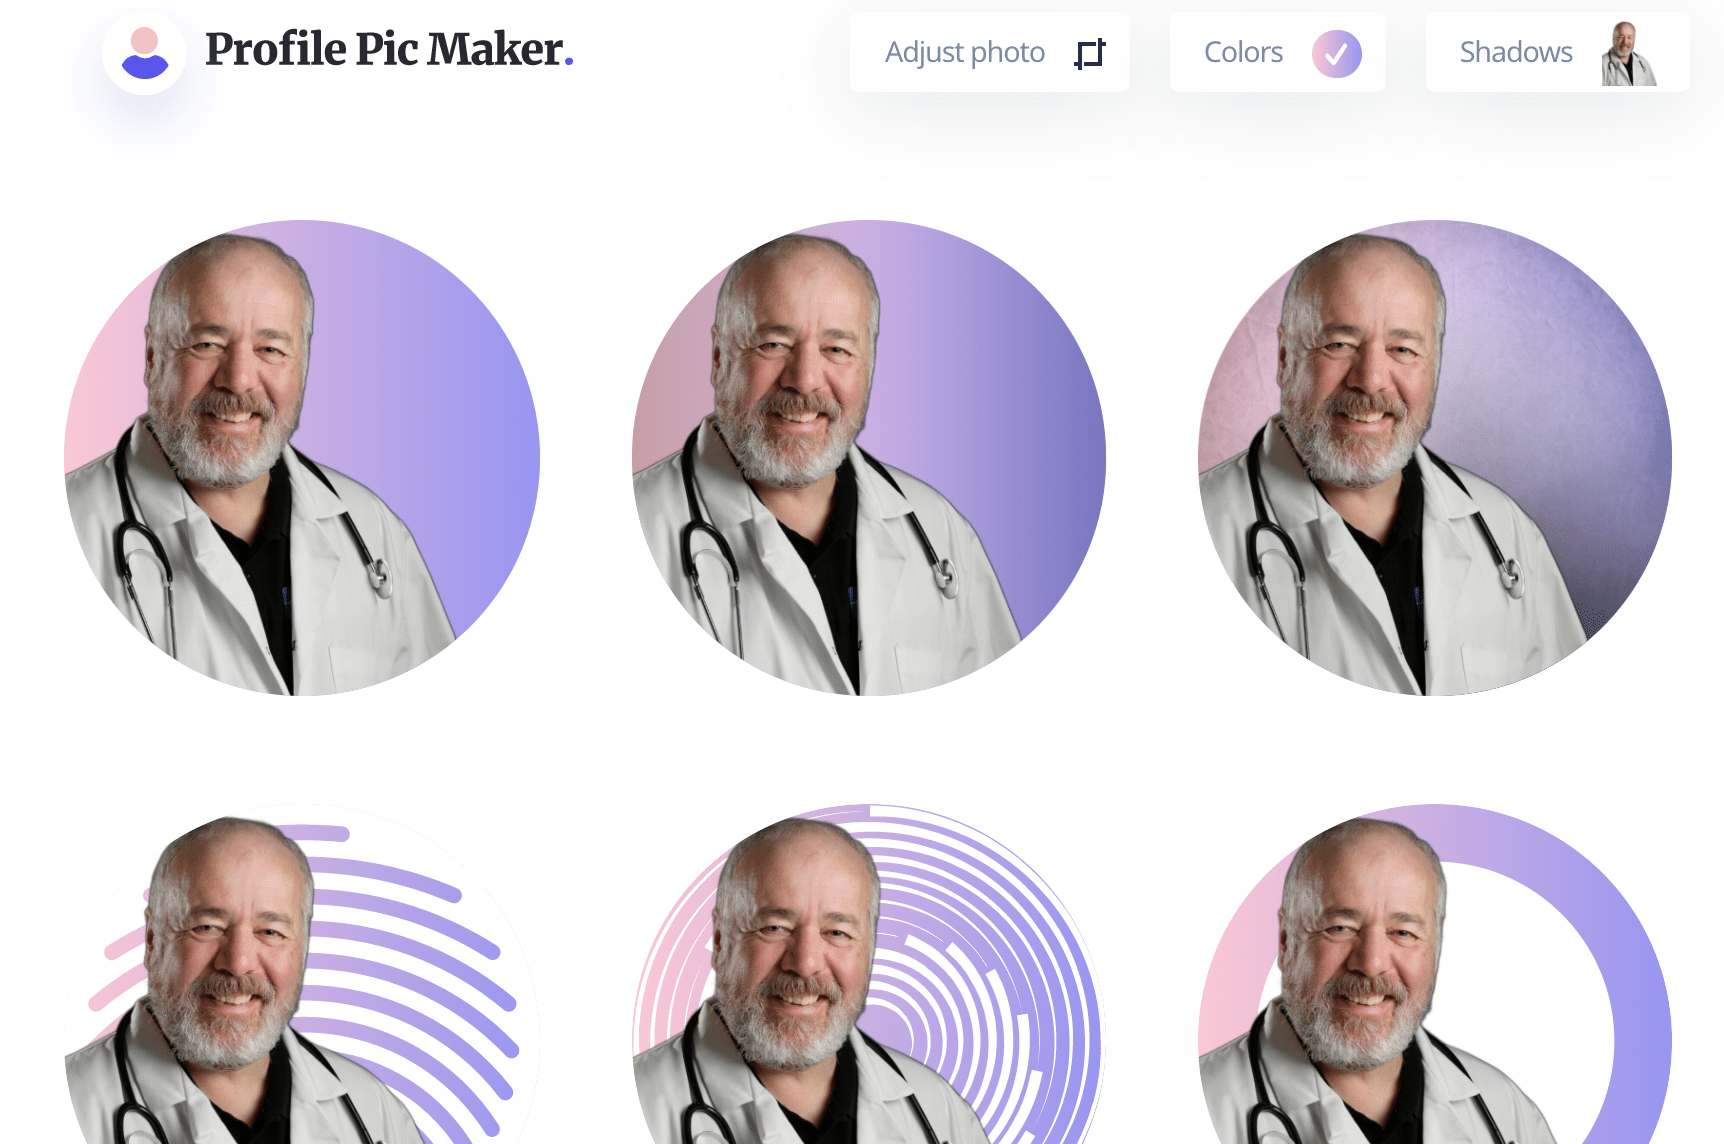 Profile Pic Maker results